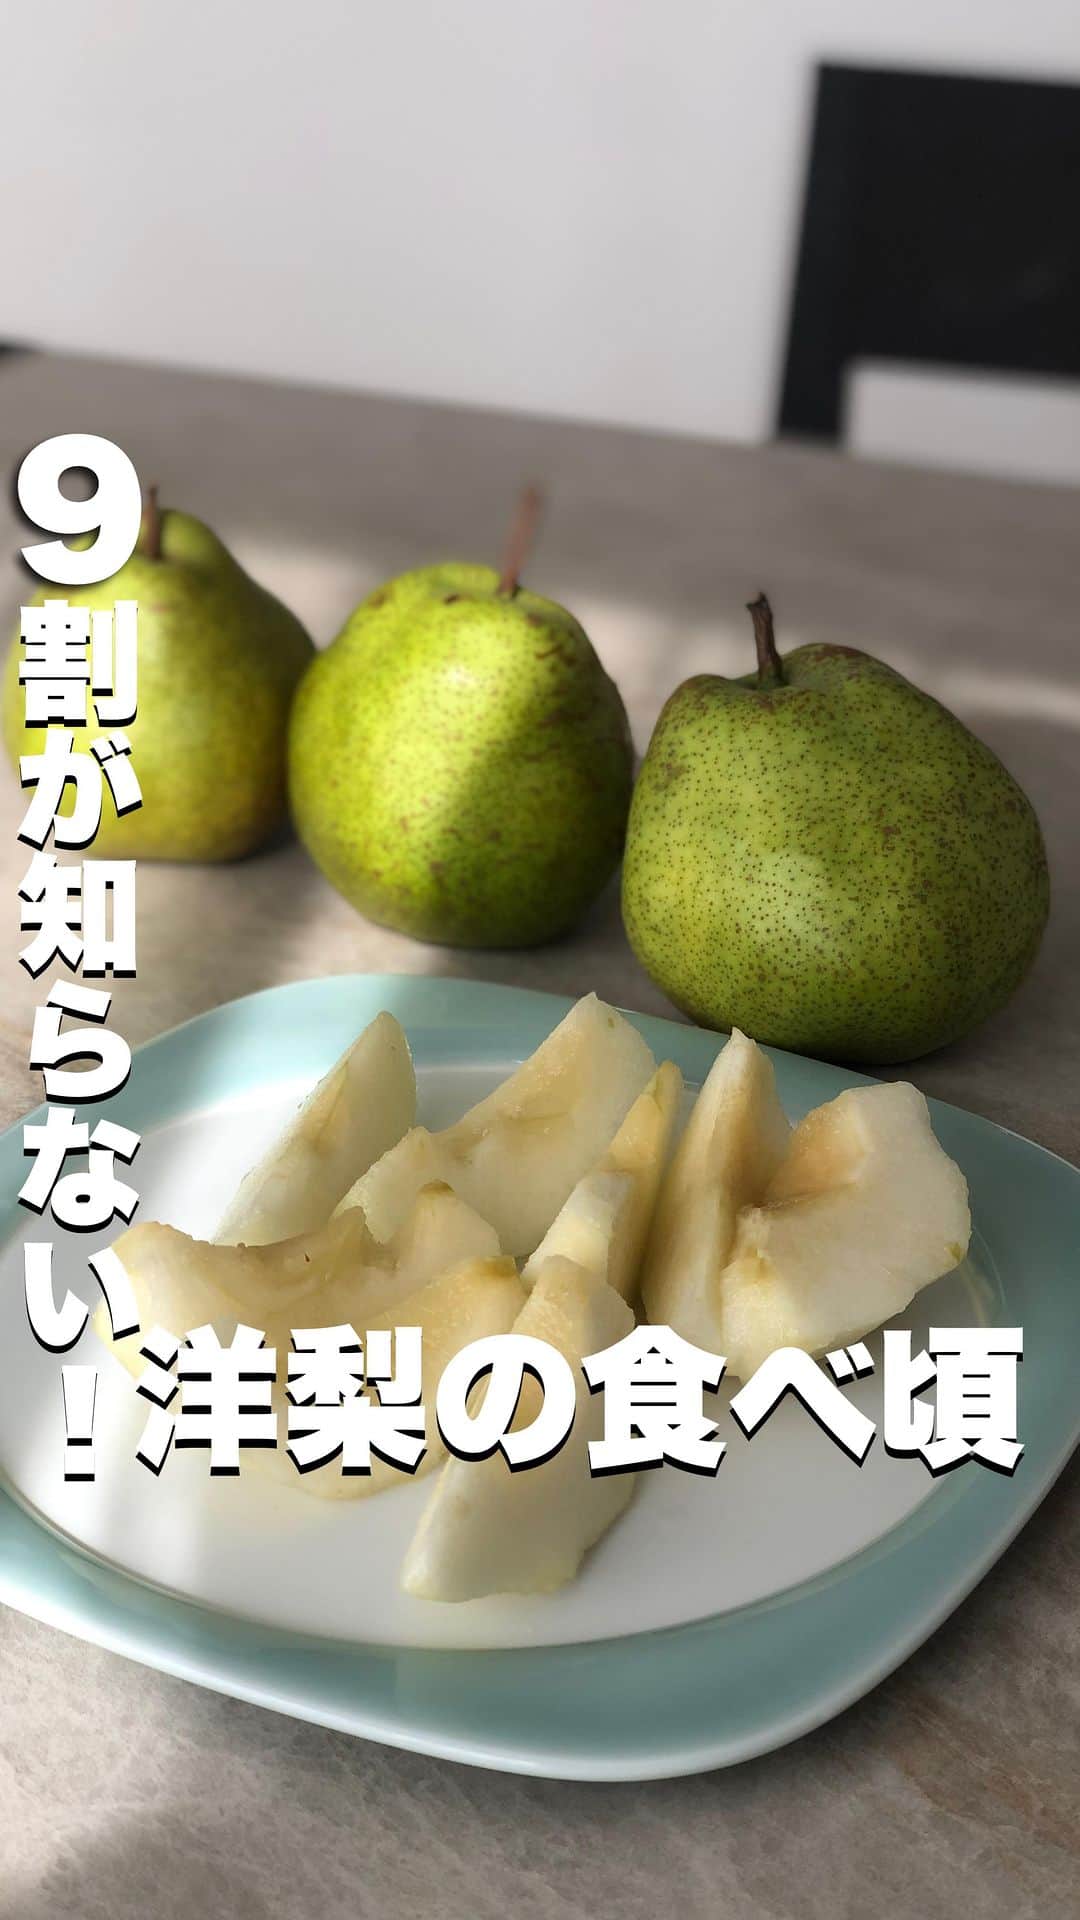 菅野広恵のインスタグラム：「@hiroesugano ←他の果物の豆知識はこちら  洋梨は、食べ頃を間違えると 「思ったのと違う😣」と勘違いされやすい果物😭  でもね… 食べ頃をきちんとすると… その見た目からは想像できないほどの 上品な甘さに芳醇な香りと とろけるような食感が 最高なんです😋❤️  洋梨をトロける食感で 美味しく食べて頂く簡単な見分け方は2つ！  ①ヘタのグラグラをチェック‼️ ❌→ヘタが全く動かず硬い物は、洋梨も硬くりんごのようで甘味もなく、マズいと感じる事も😱 ⭕️→ヘタがグラグラになったら食べ頃スタートです✨まだ、触った時に洋梨が硬くても、ヘタがグラグラしていたら、美味しく食べて頂けるかと🤭スプーンですくえるぐらいで食べる場合は、もう少し置いておくと🙆‍♀️  ②ヘタの周りをチェック‼️ ❌→ヘタの周りが石みたいカチコチの物はまだ硬いサイン！ ⭕️→ヘタの周りが触った時に耳たぶぐらいの柔らかさになったら食べ頃ok👌  ※但し、ヘタの周りを触った時にまだ硬くて、でも、ヘタがグラグラしていたら、食べれます🙆トロける段階を楽しみながら追熟させるのも楽しみの1つになるかと🤭❤️  【追熟とは🍐】 洋梨はメロンなどと同じで、買ってきてもすぐに食べれない果物。 常温で置いて食べ頃になったら 冷蔵庫に入れて食べる事を 「追熟してから食べる」と言います。  もし、よかった…ためになったら「🍐」とコメントしてくれるとうれしいです🥹🍐 ……………………………………………… ・野菜ソムリエプロ ・子供に食べさせたい 野菜・果物を産地直送でお届けしている @vegetaiment 代表　ひろえです🍎🍐🥕 今回は、洋梨を美味しく食べて頂くための 「食べ頃」をお届けしました🤭 ………………………………………………  生産者さんたちが作る美味しい果物を より美味しく食べれますように😊✨  @vegetaiment より旬のラフランスもお届け中🍐 よかったら @vegetaiment チェックしてみてね♡  #野菜ソムリエプロ　#果物　#生活の知恵　#節約術  #旬の食材  #旬の果物  #果物好き　#旬の果物　#食べて綺麗になる　#トリセツ #洋梨」